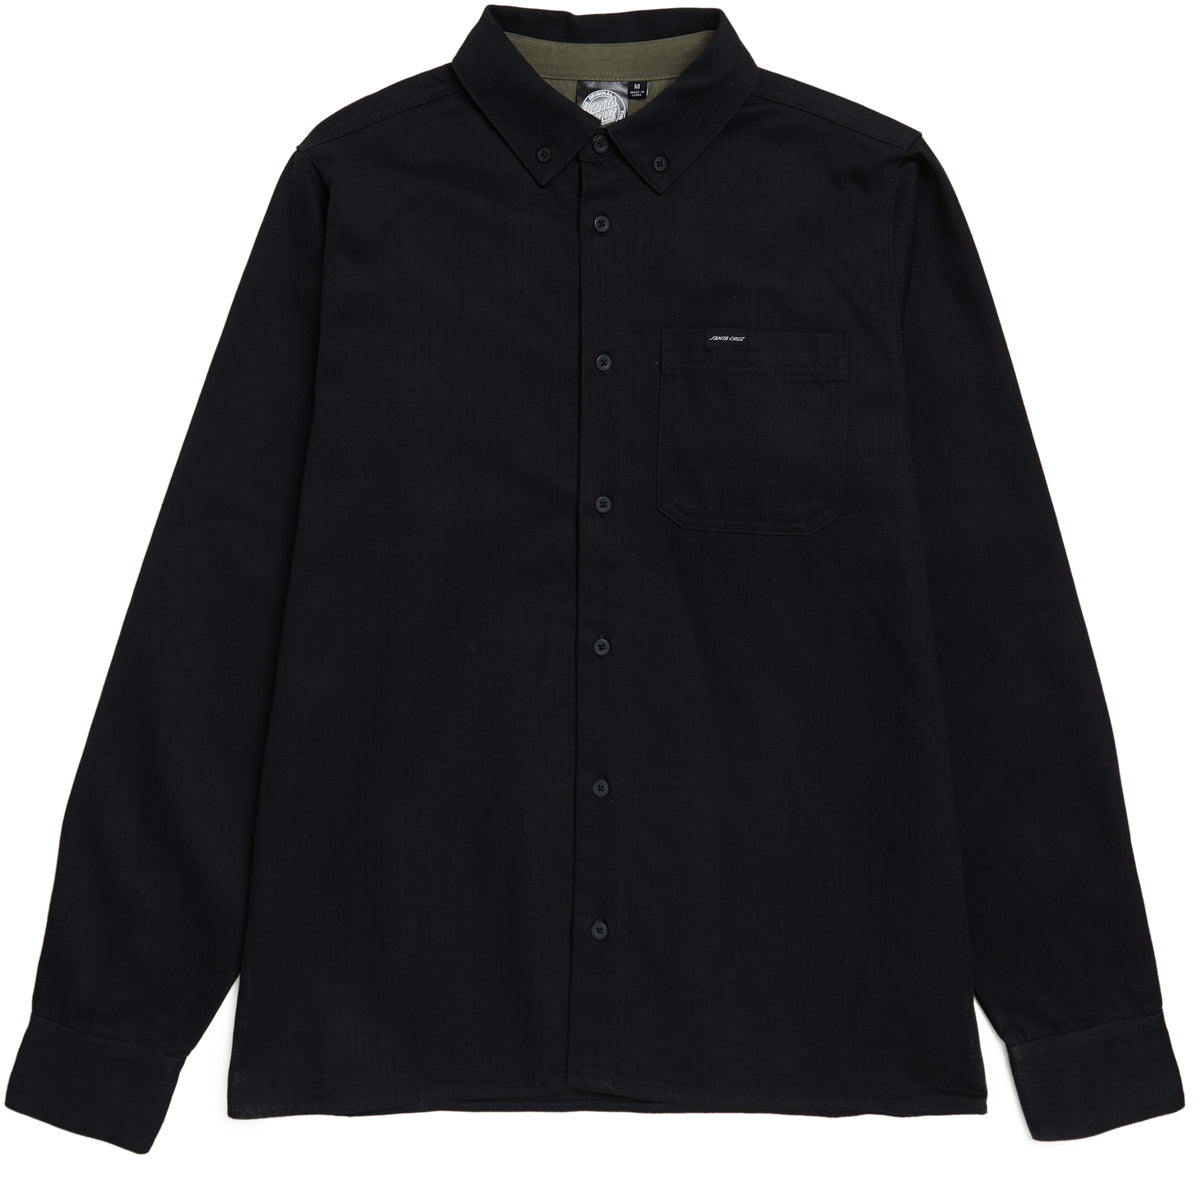 Santa Cruz Bowman Long Sleeve Work Shirt - Black image 1